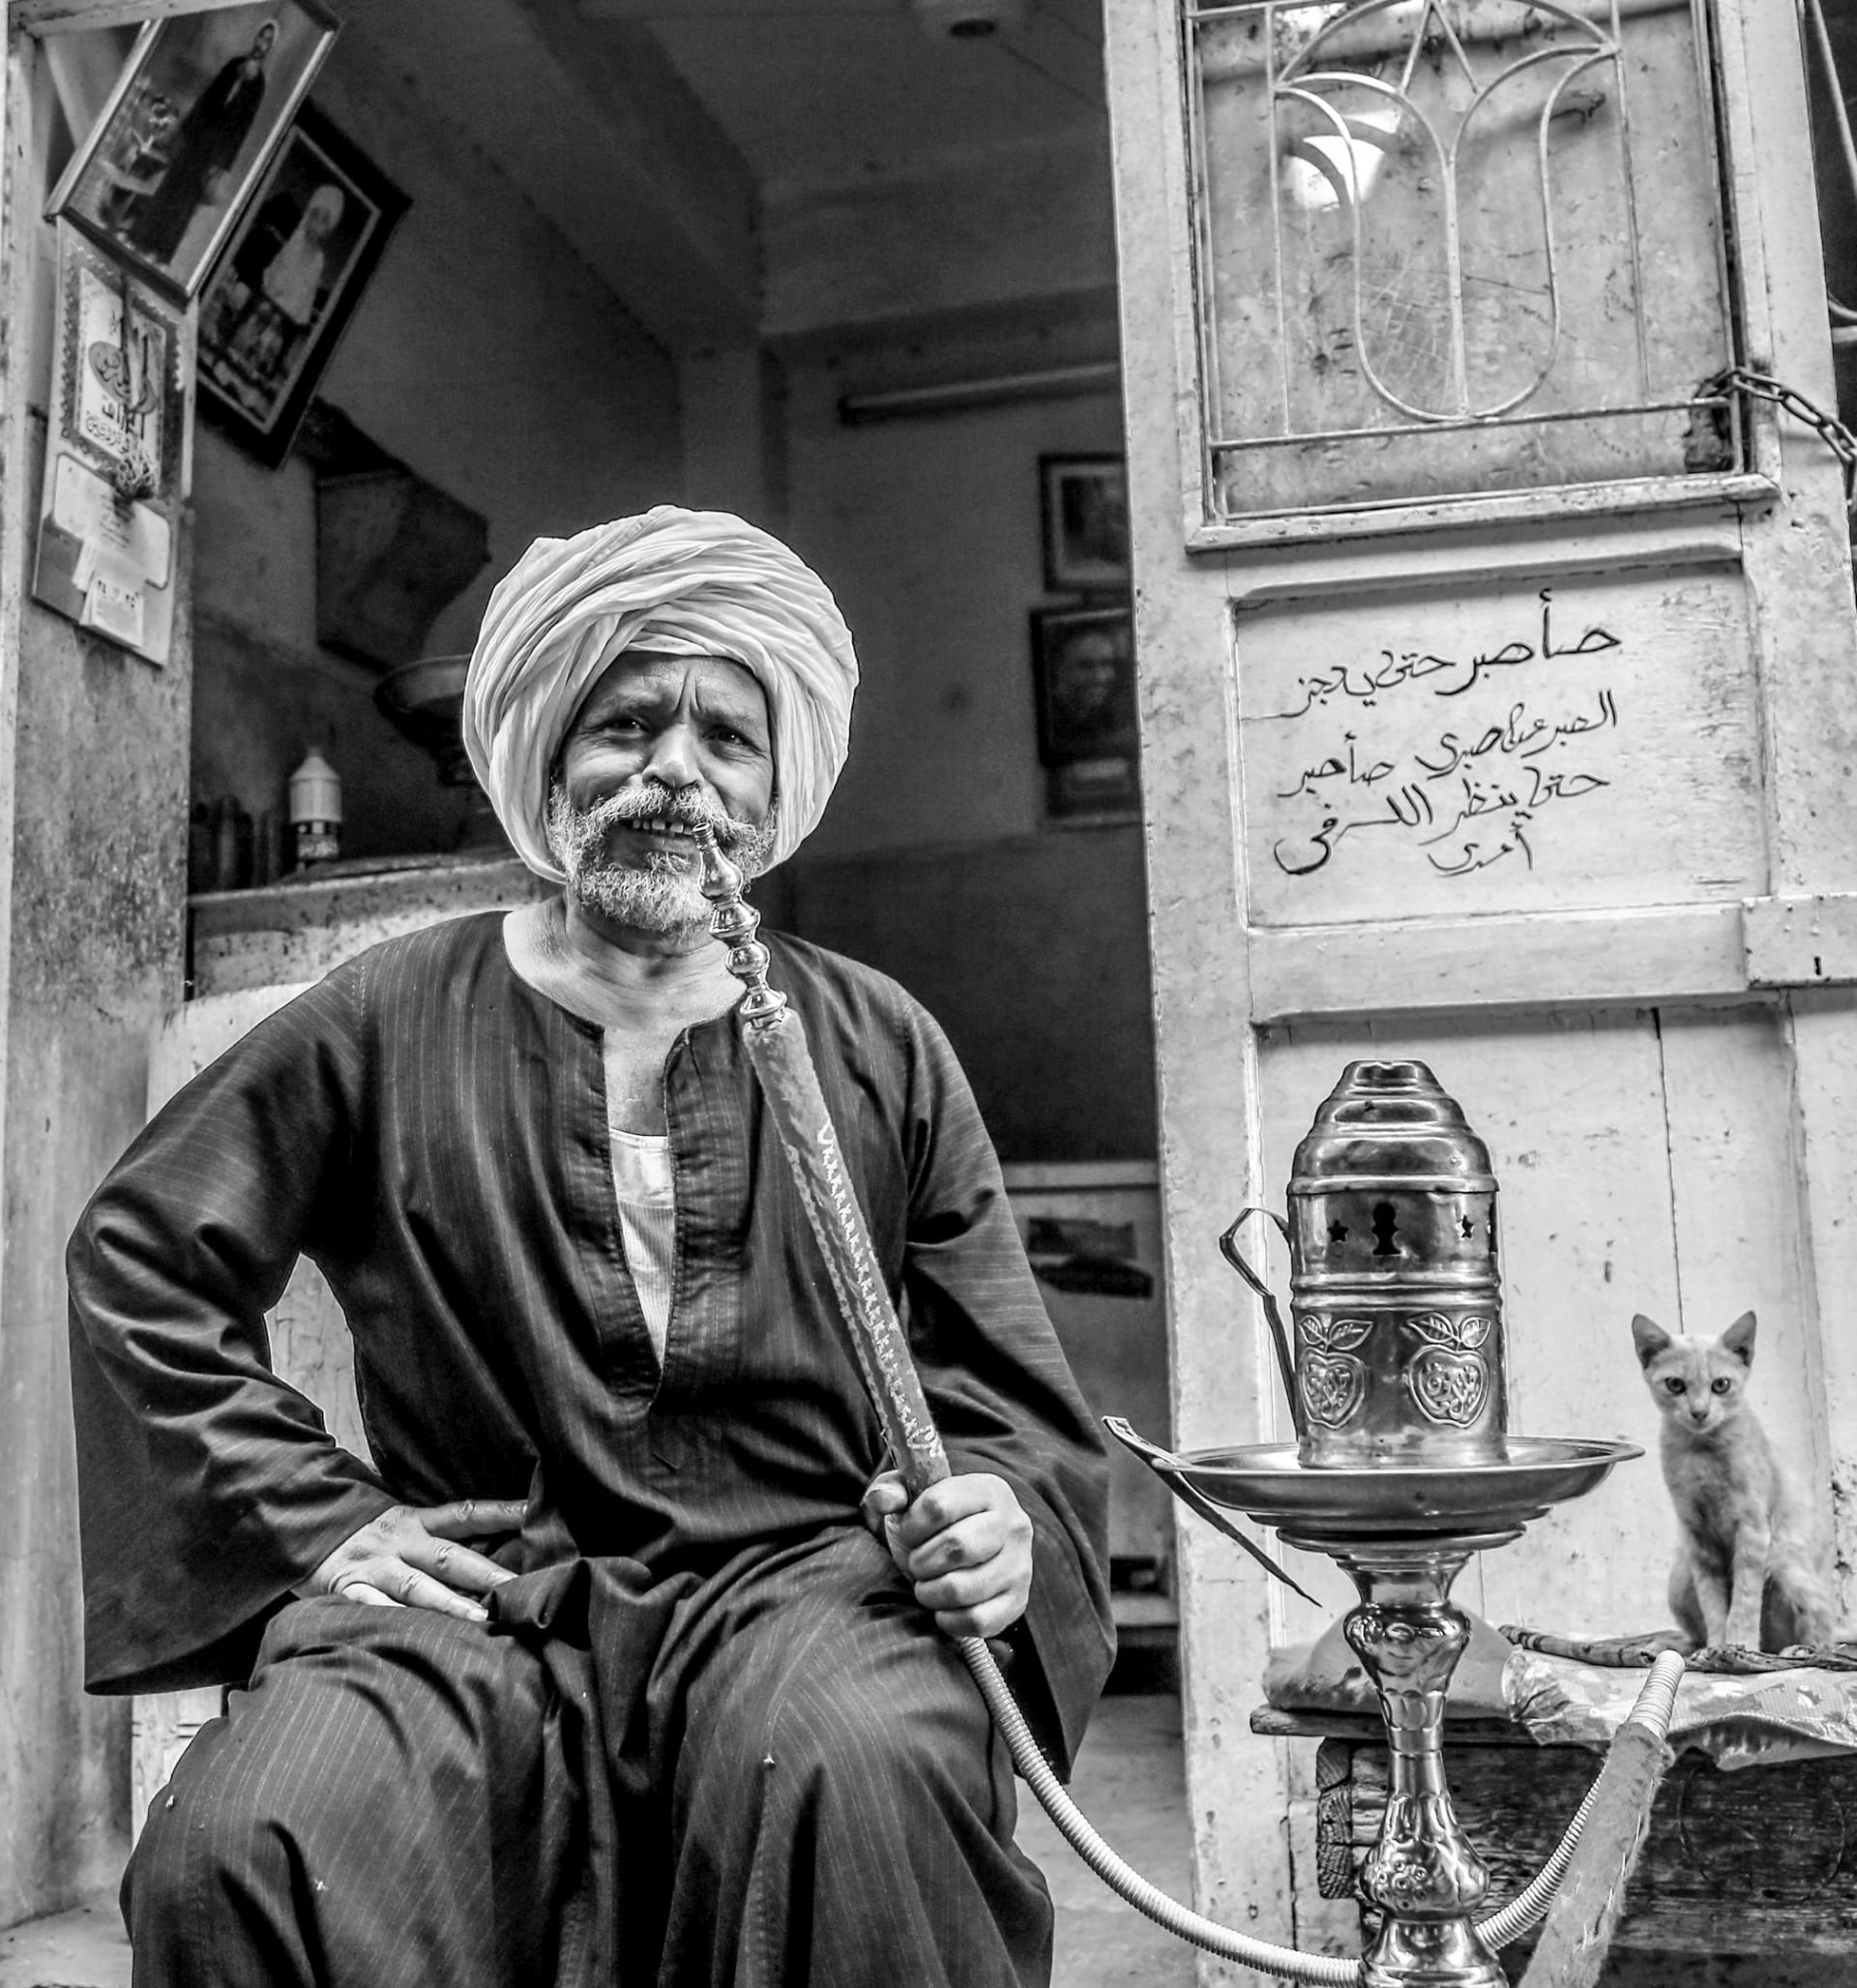 بين شوارعها وآثارها الخالدة.. لبناني يعثر على "الوجه الحقيقي" لأهالي مصر عبر هذه الصور